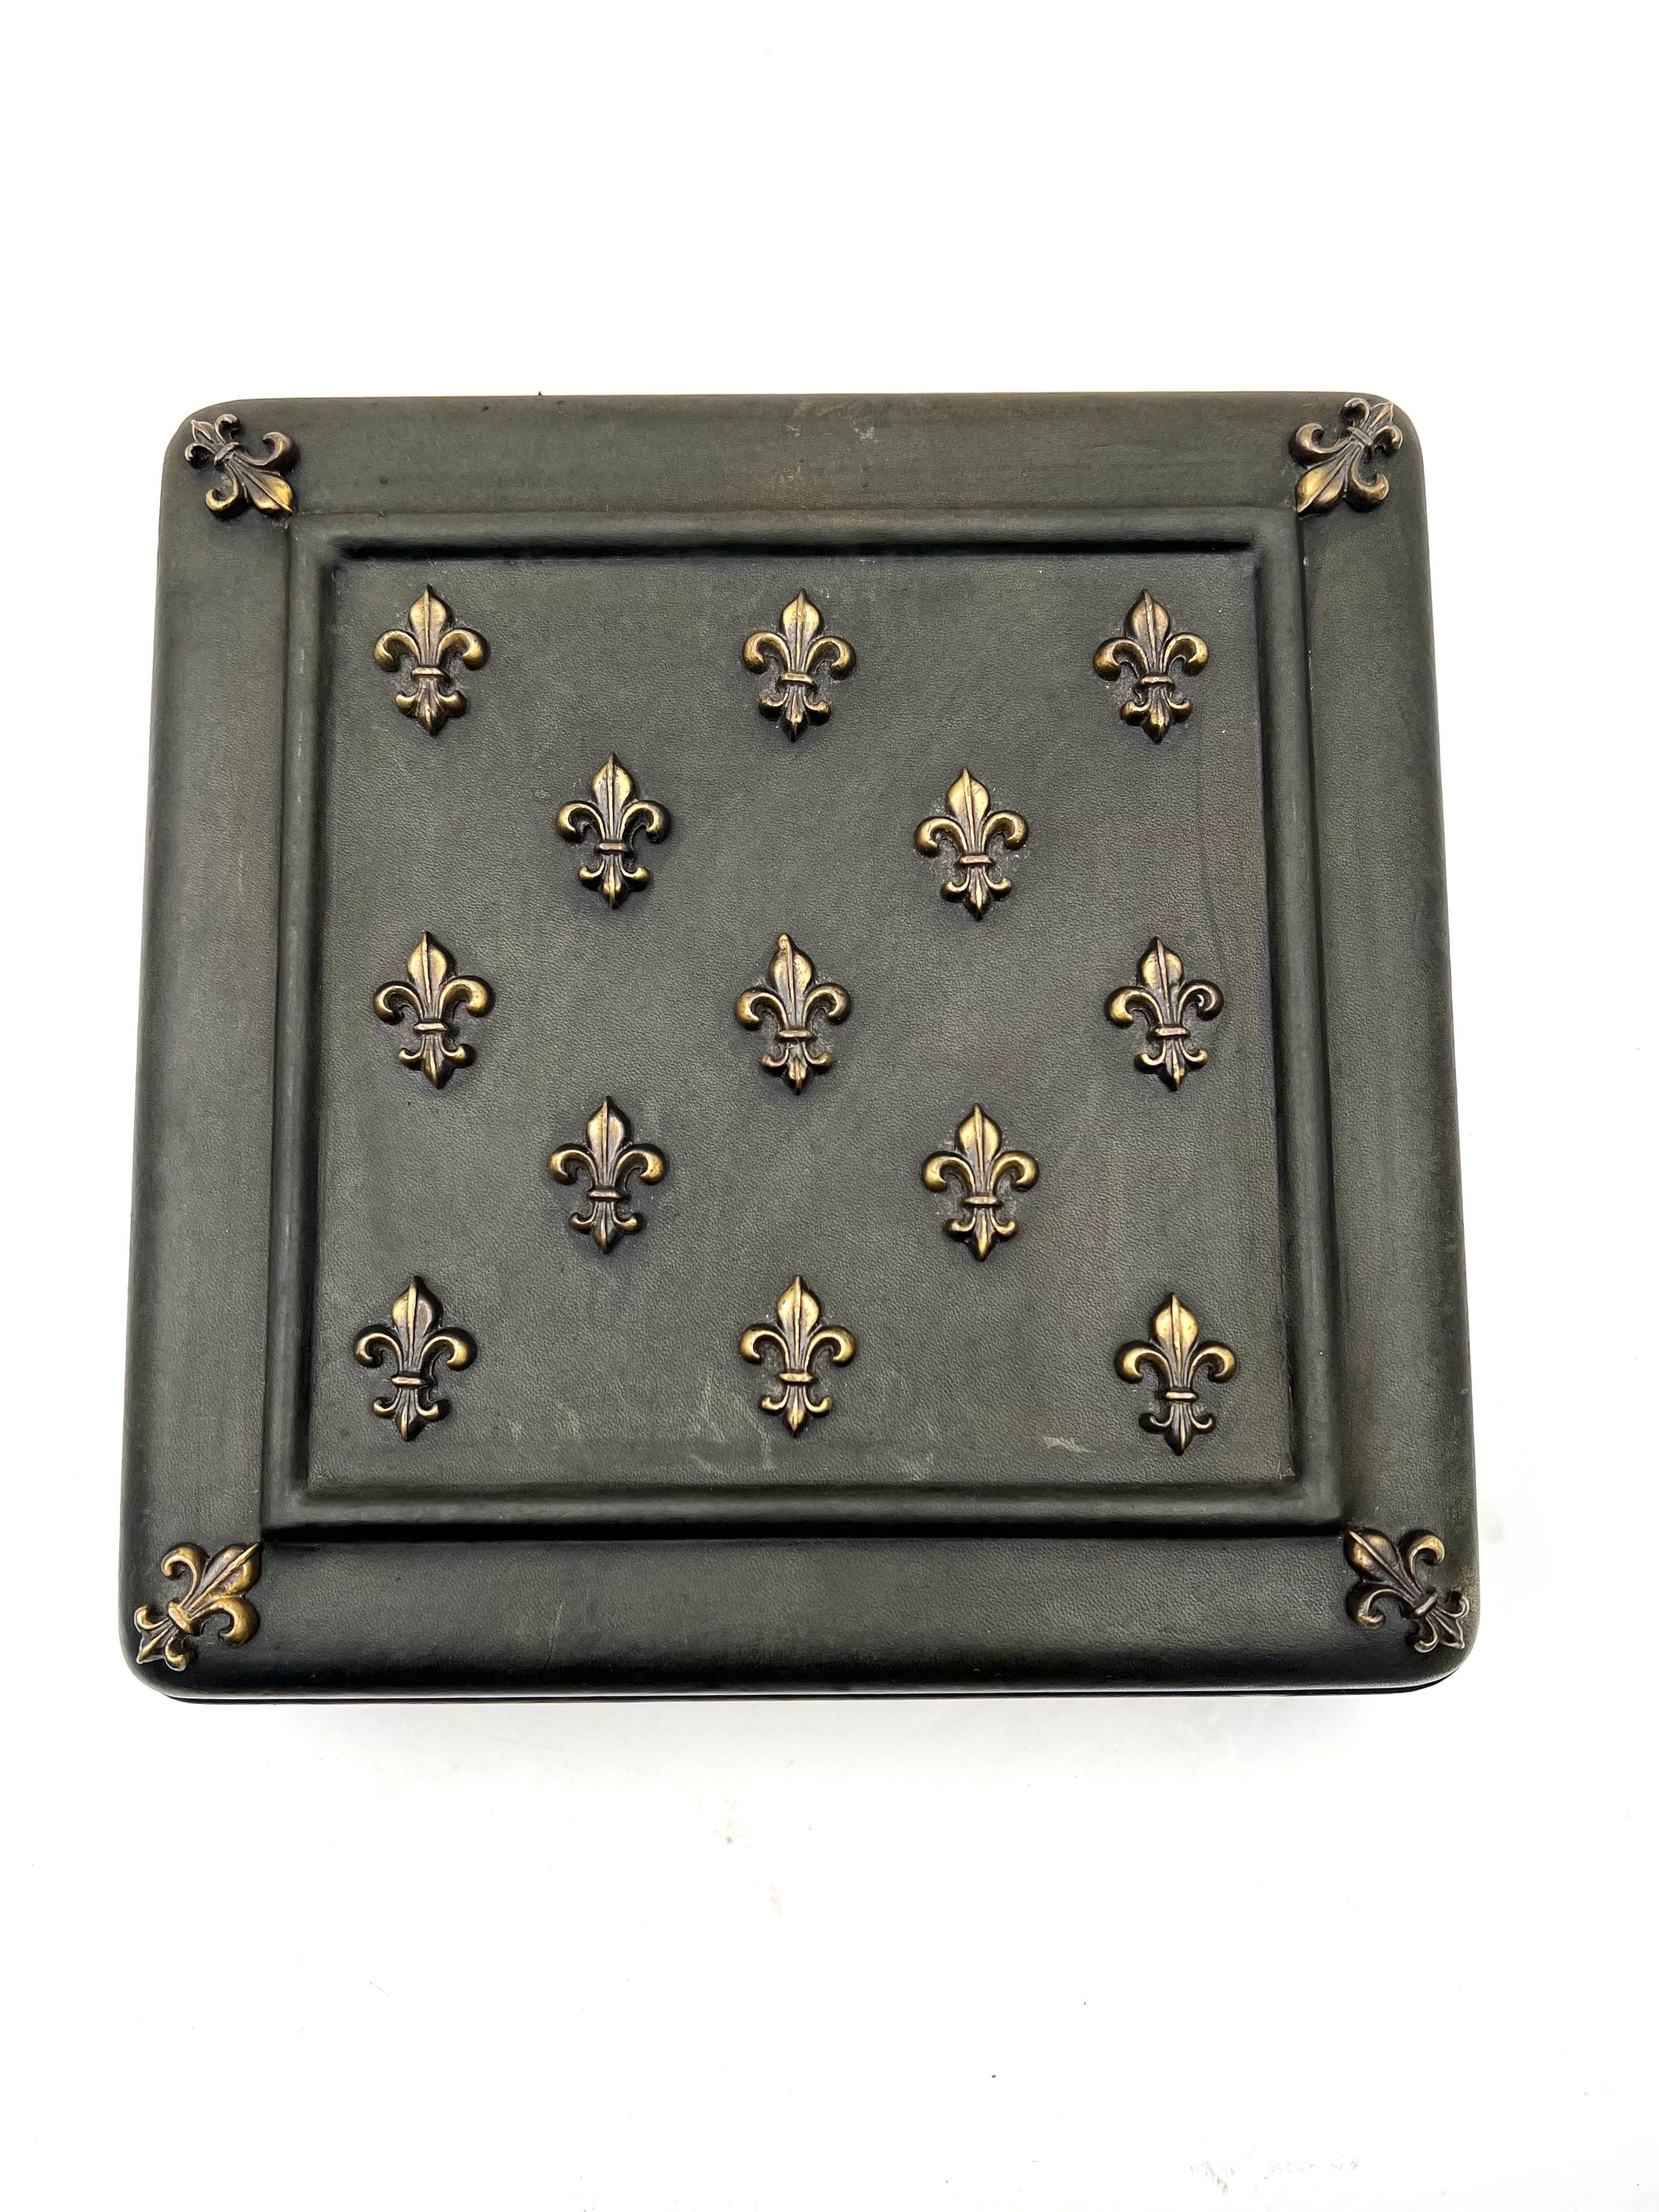 Magnifique boîte en cuir élégante avec motif Fleur De Lis, circa 1960, en cuir vert olive avec des accents dorés, en bon état et propre avec intérieur en tissu.